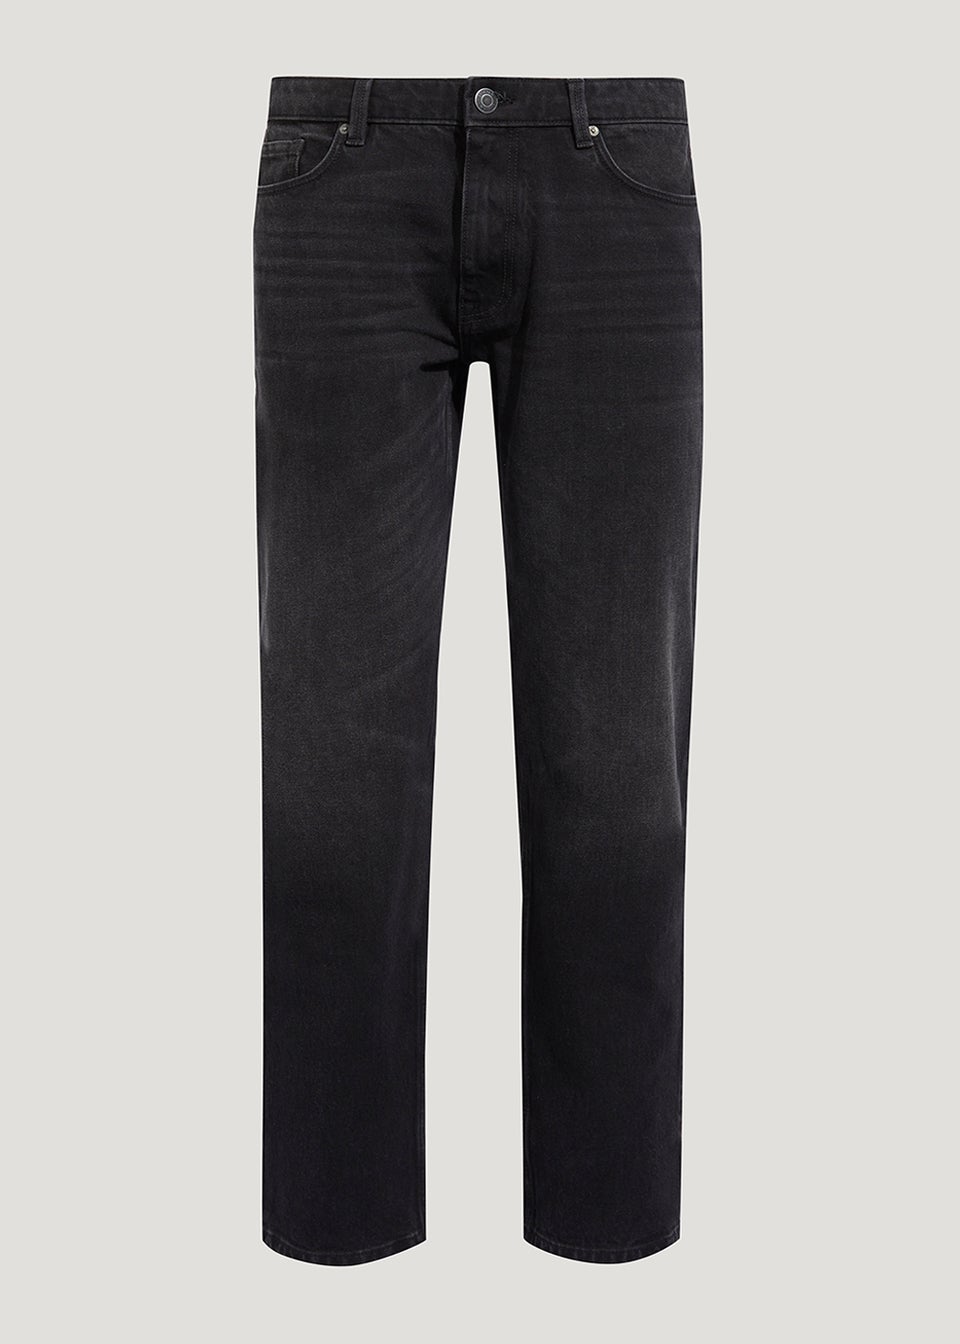 Lincoln Black Denim Slim Fit Jeans